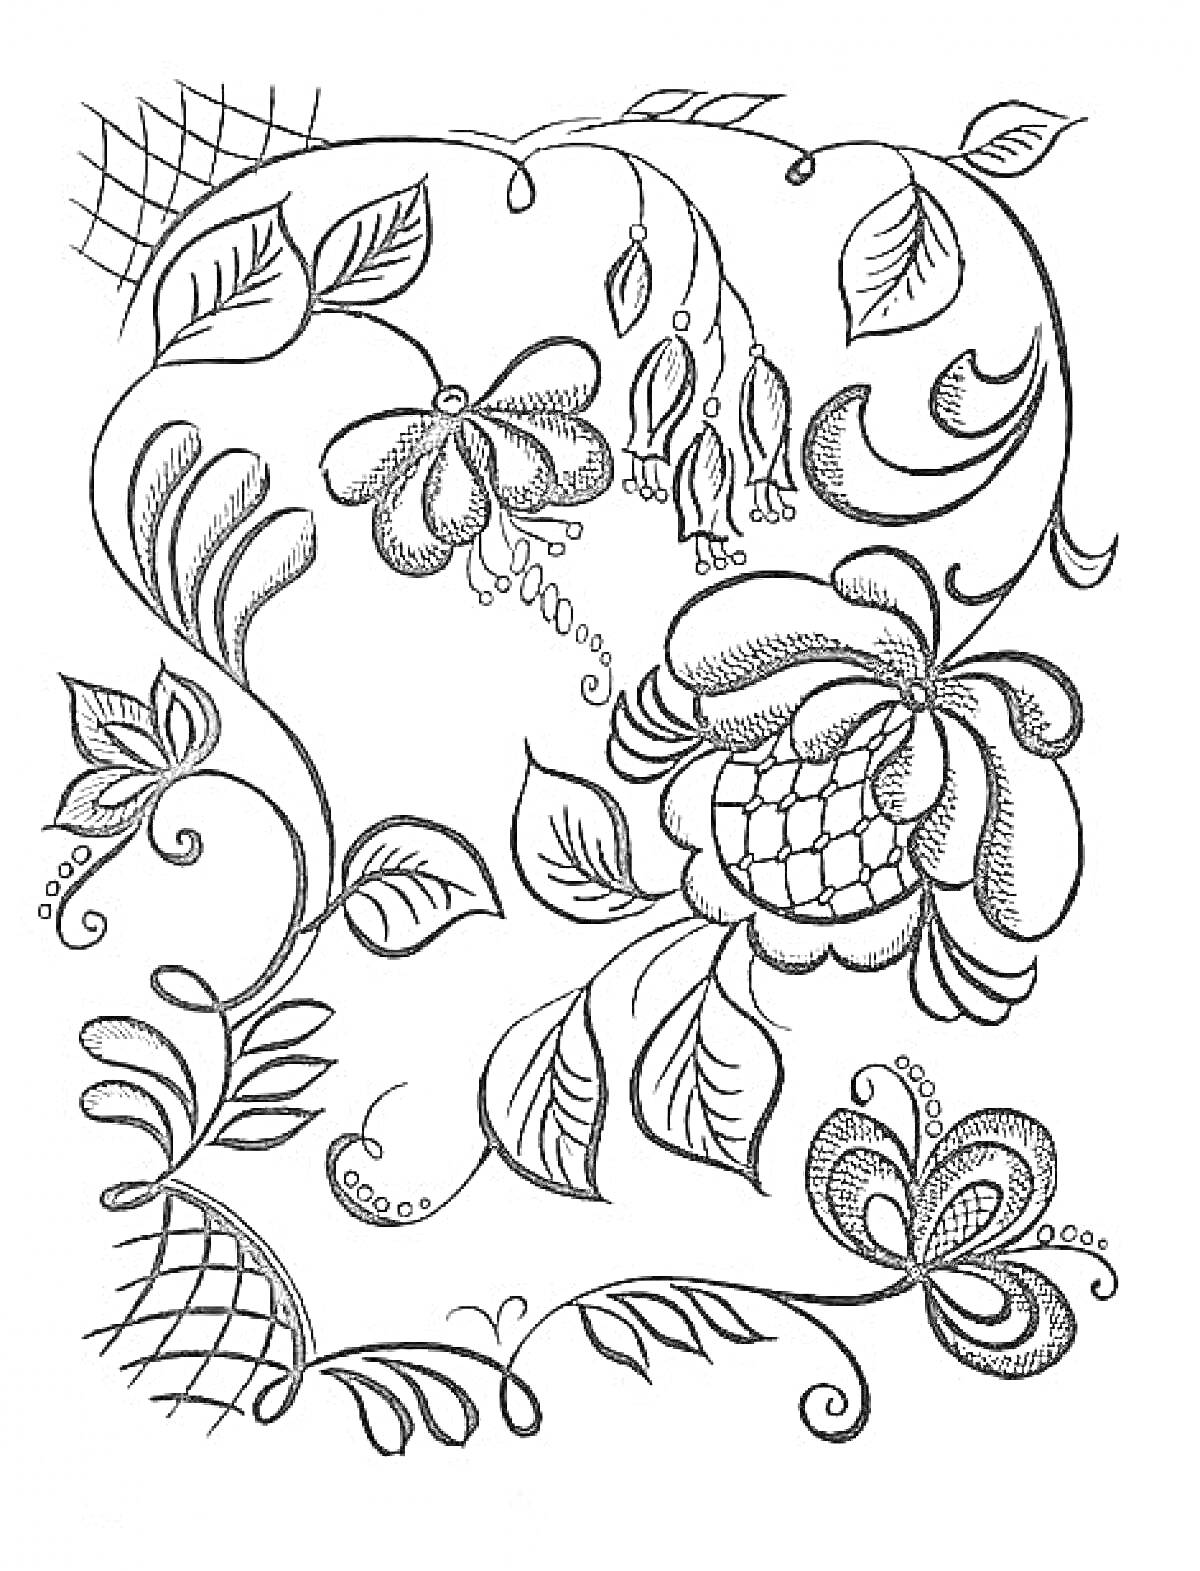 Растительный орнамент Хохломы с цветами, листьями и завитками